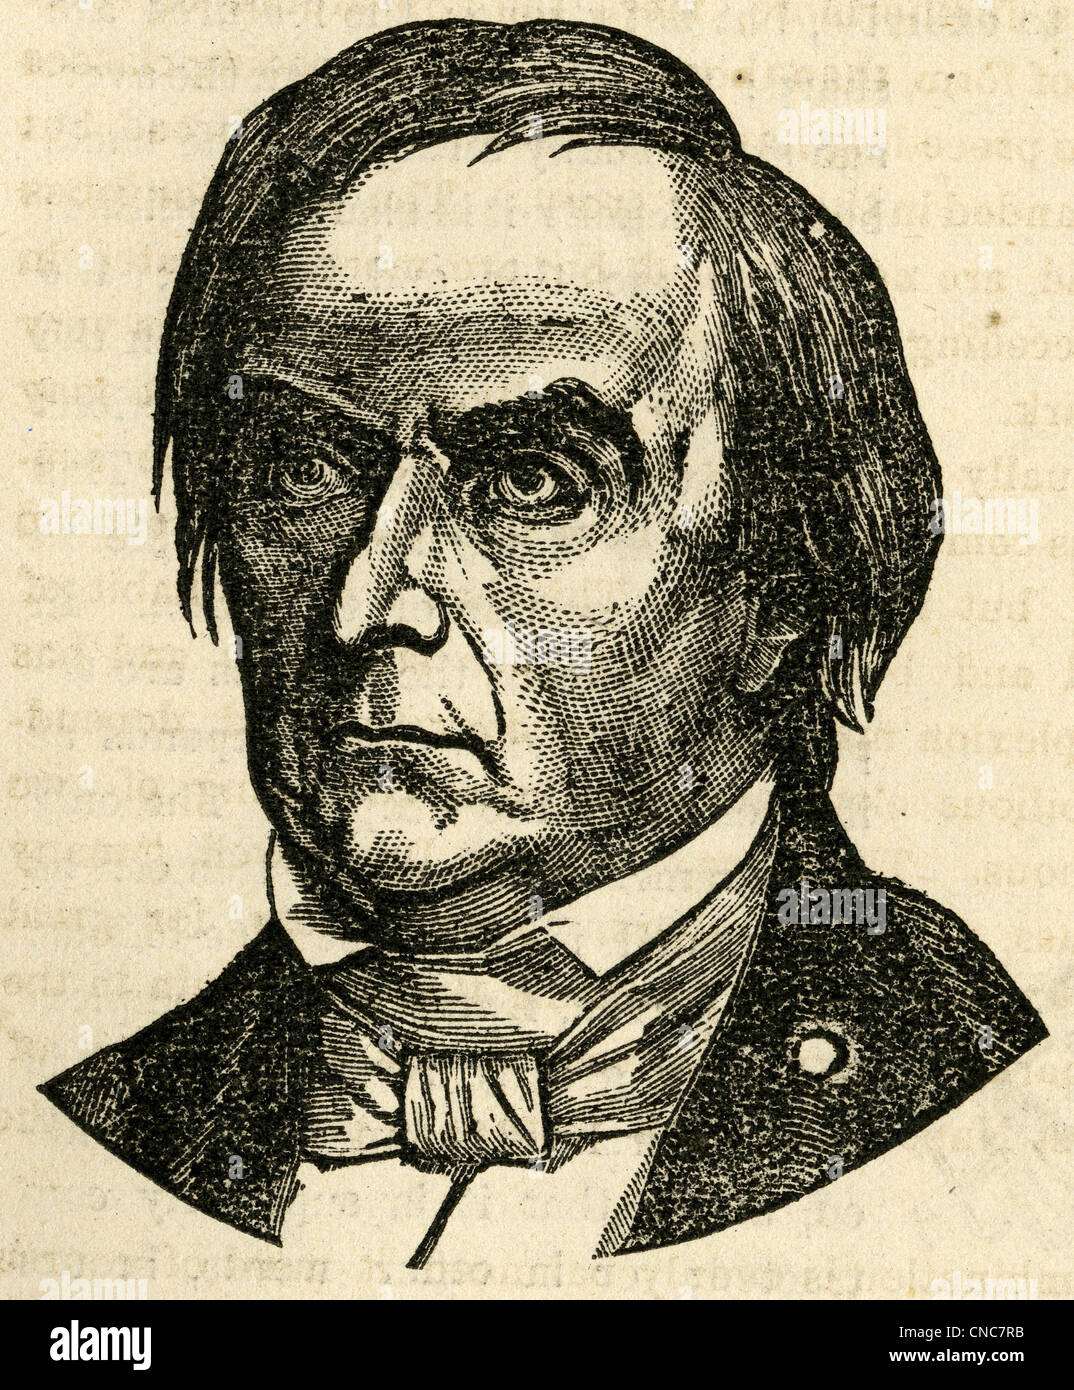 1871-Gravur von Daniel Webster. Stockfoto